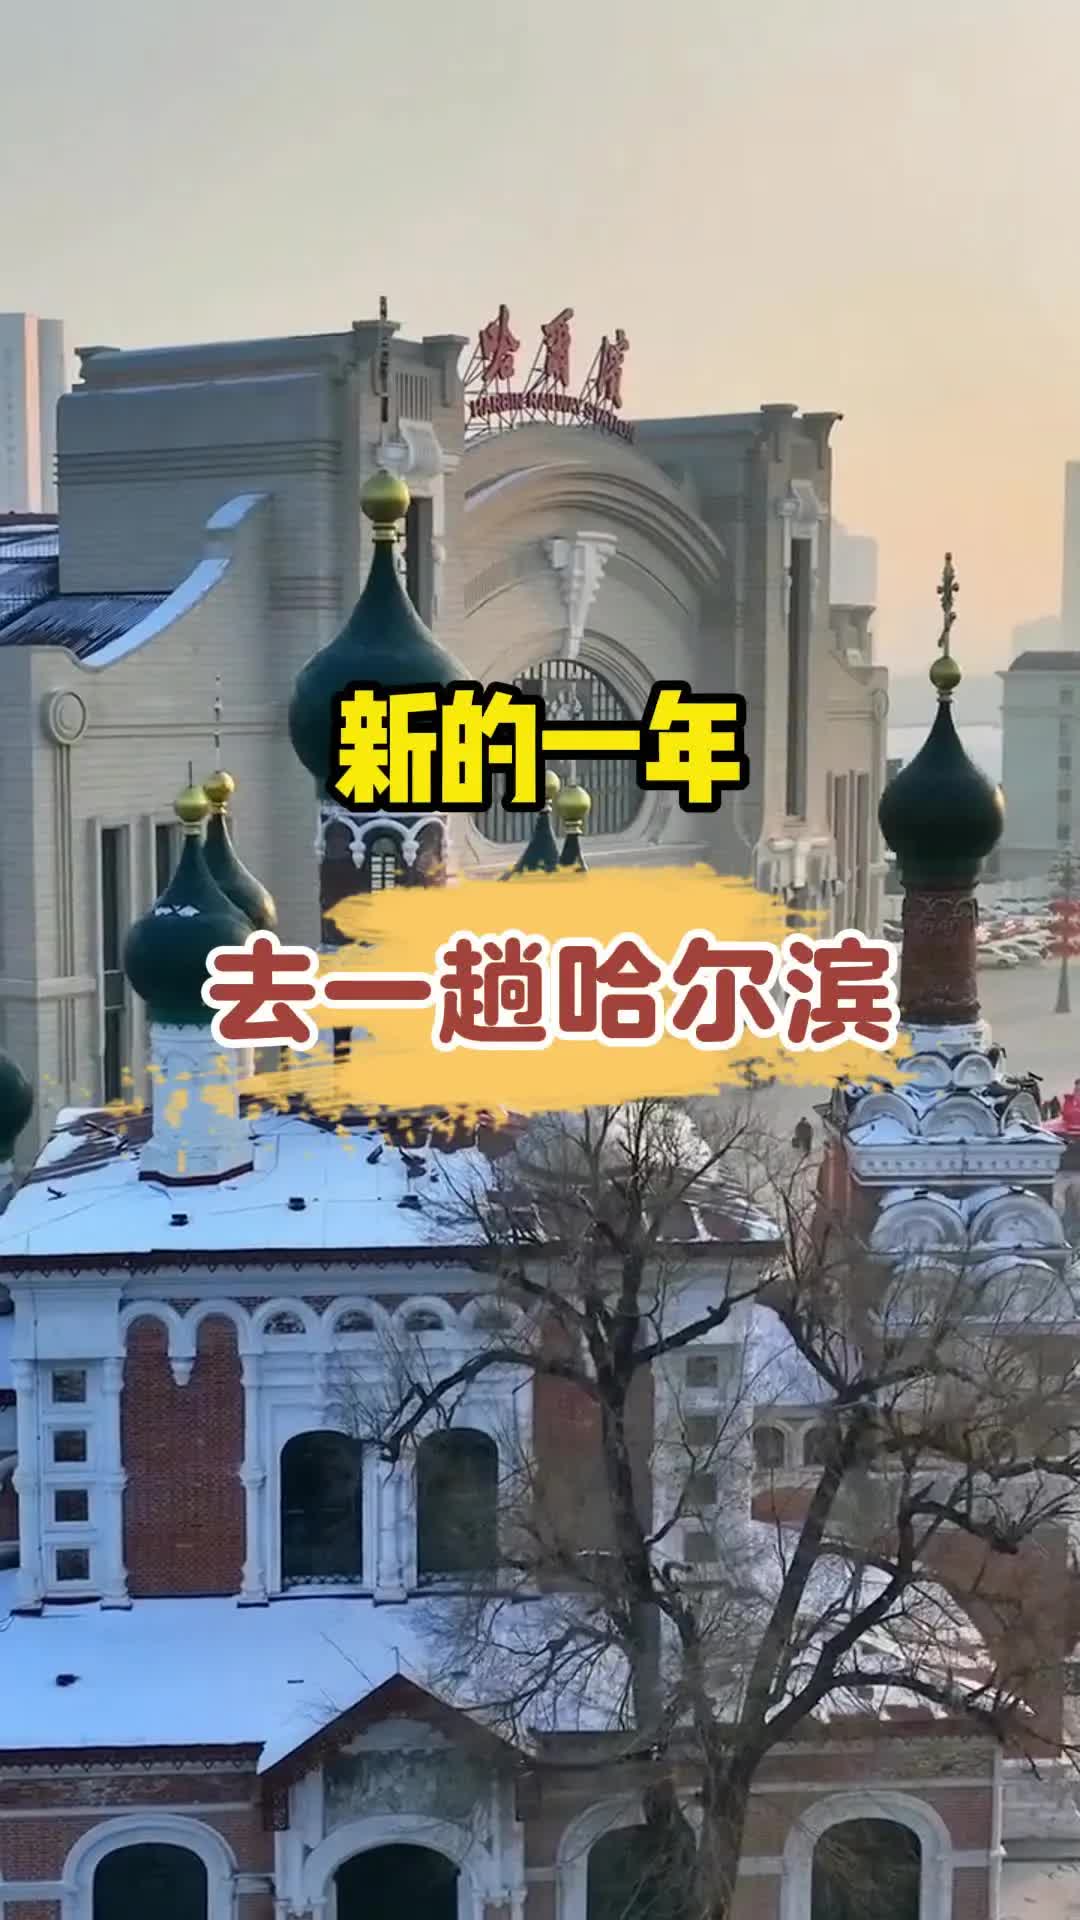 新的一年去一趟哈尔滨#哈尔滨旅游攻略